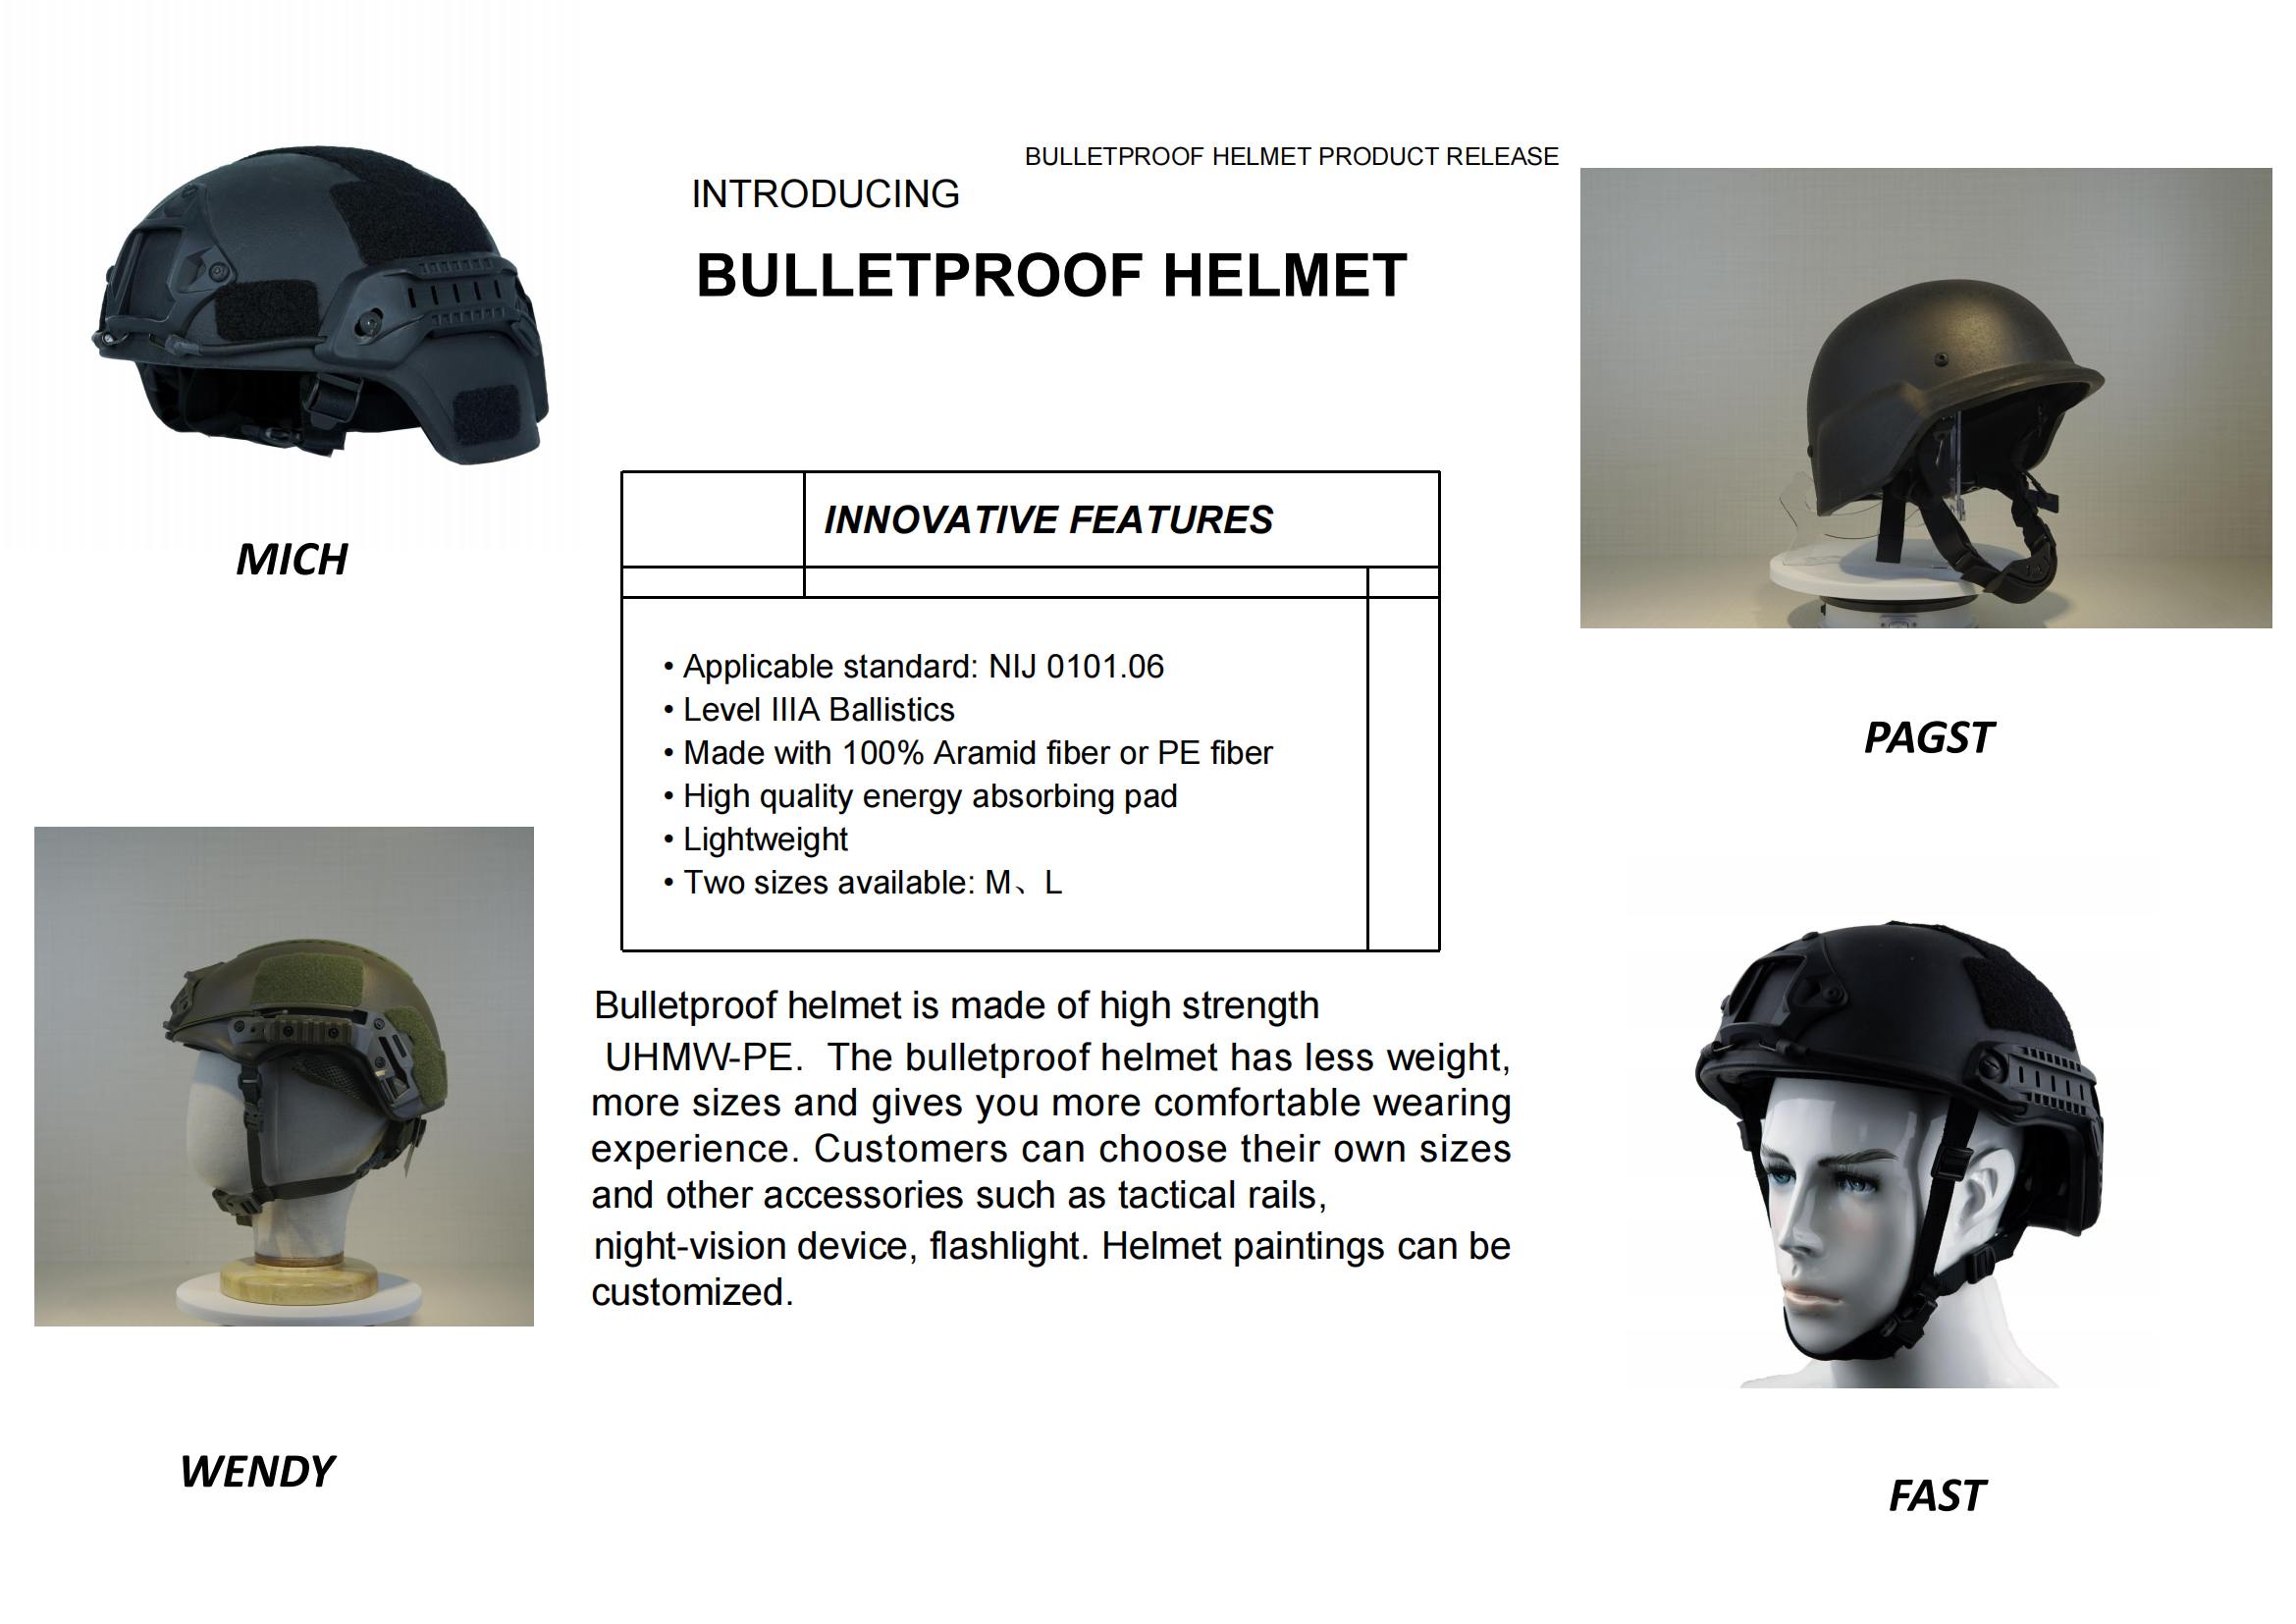 3a bulletproof helmet